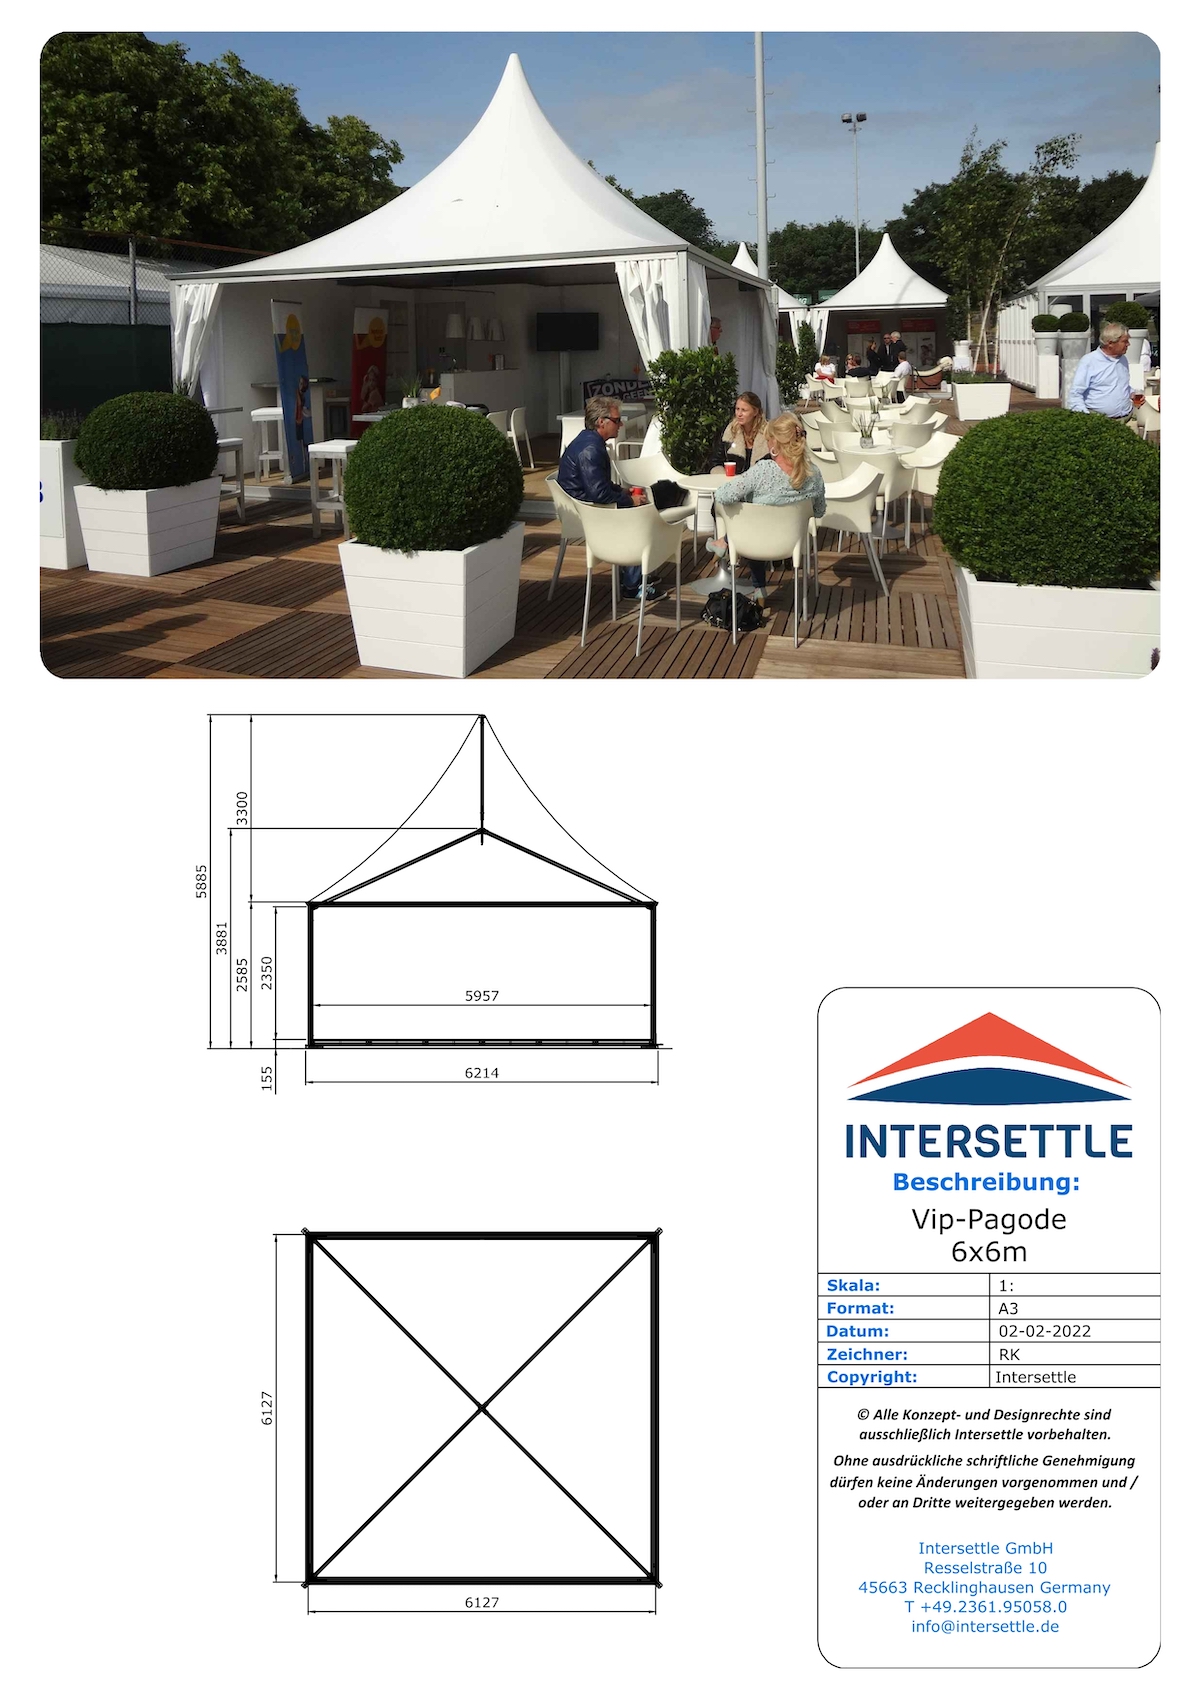 Intersettle Zeltverleih - VIP-Pagode mit Spitzdach ohne Mast in der Mitte (6x6m) für Veranstaltungen und Events - Zeltvermietung aus NRW